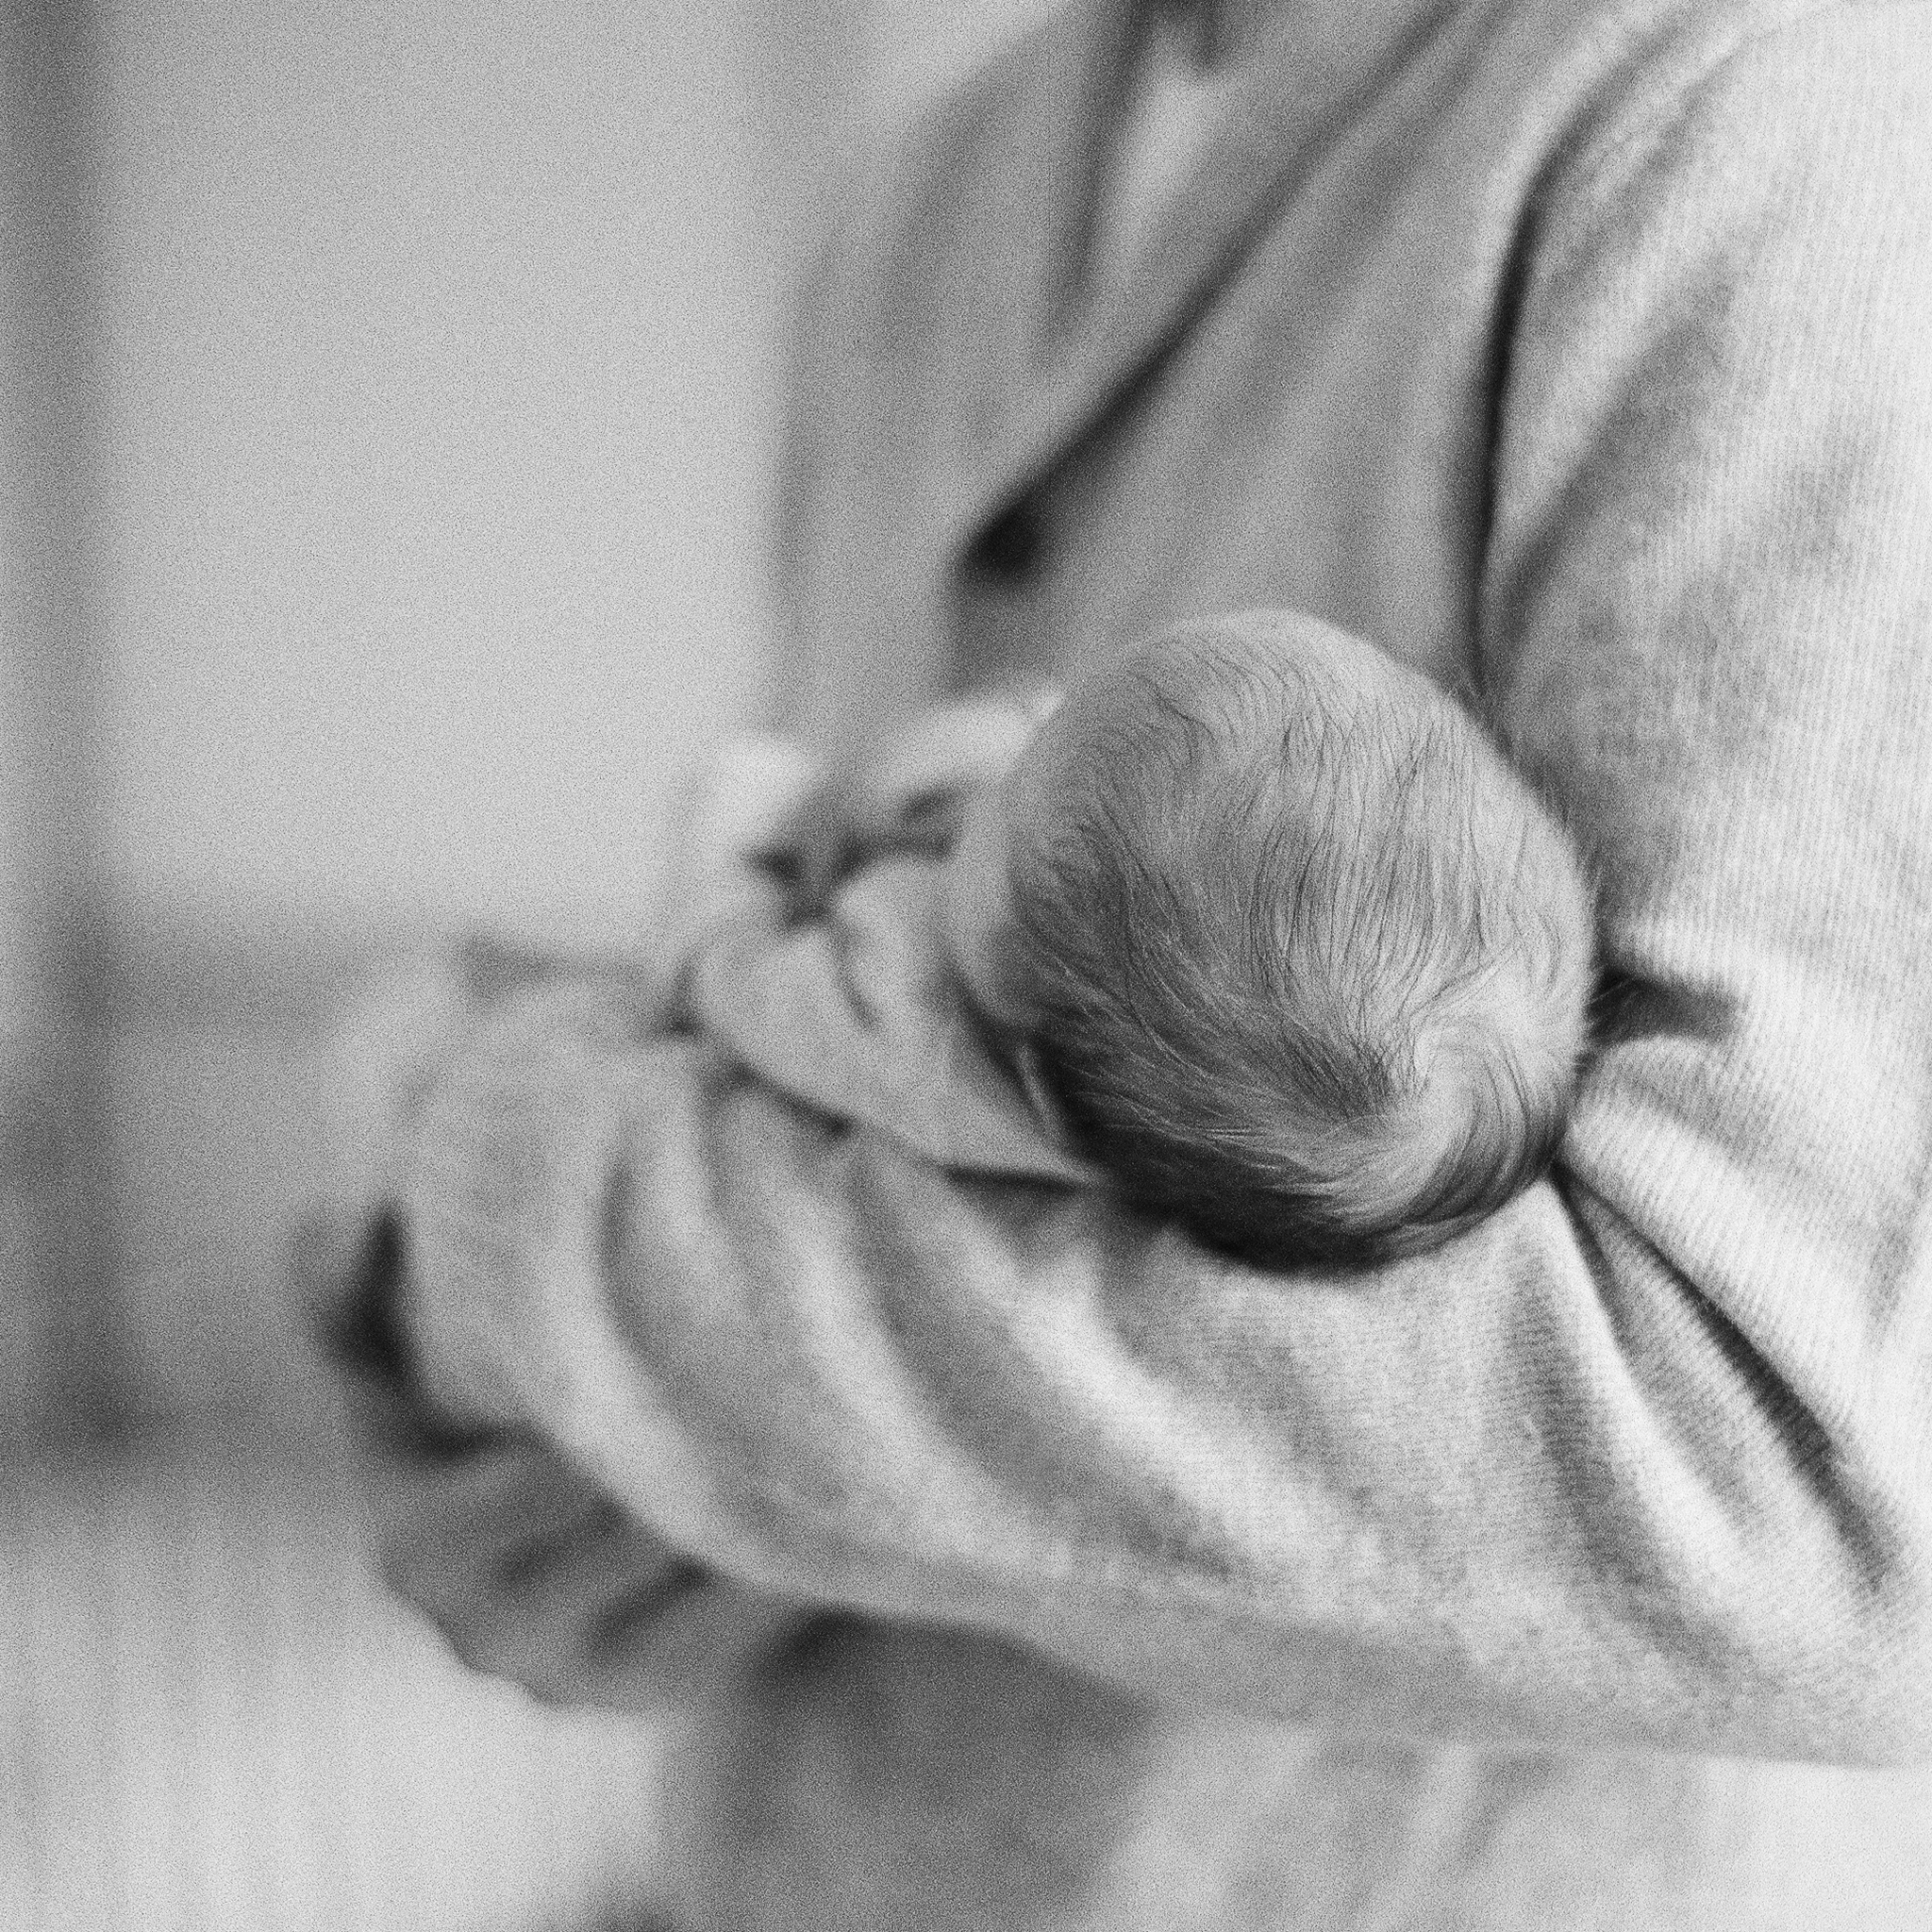 Portland Maine Maternity, Newborn, Baby Photographer Tiffany Farley, http://tiffanyfarley.com